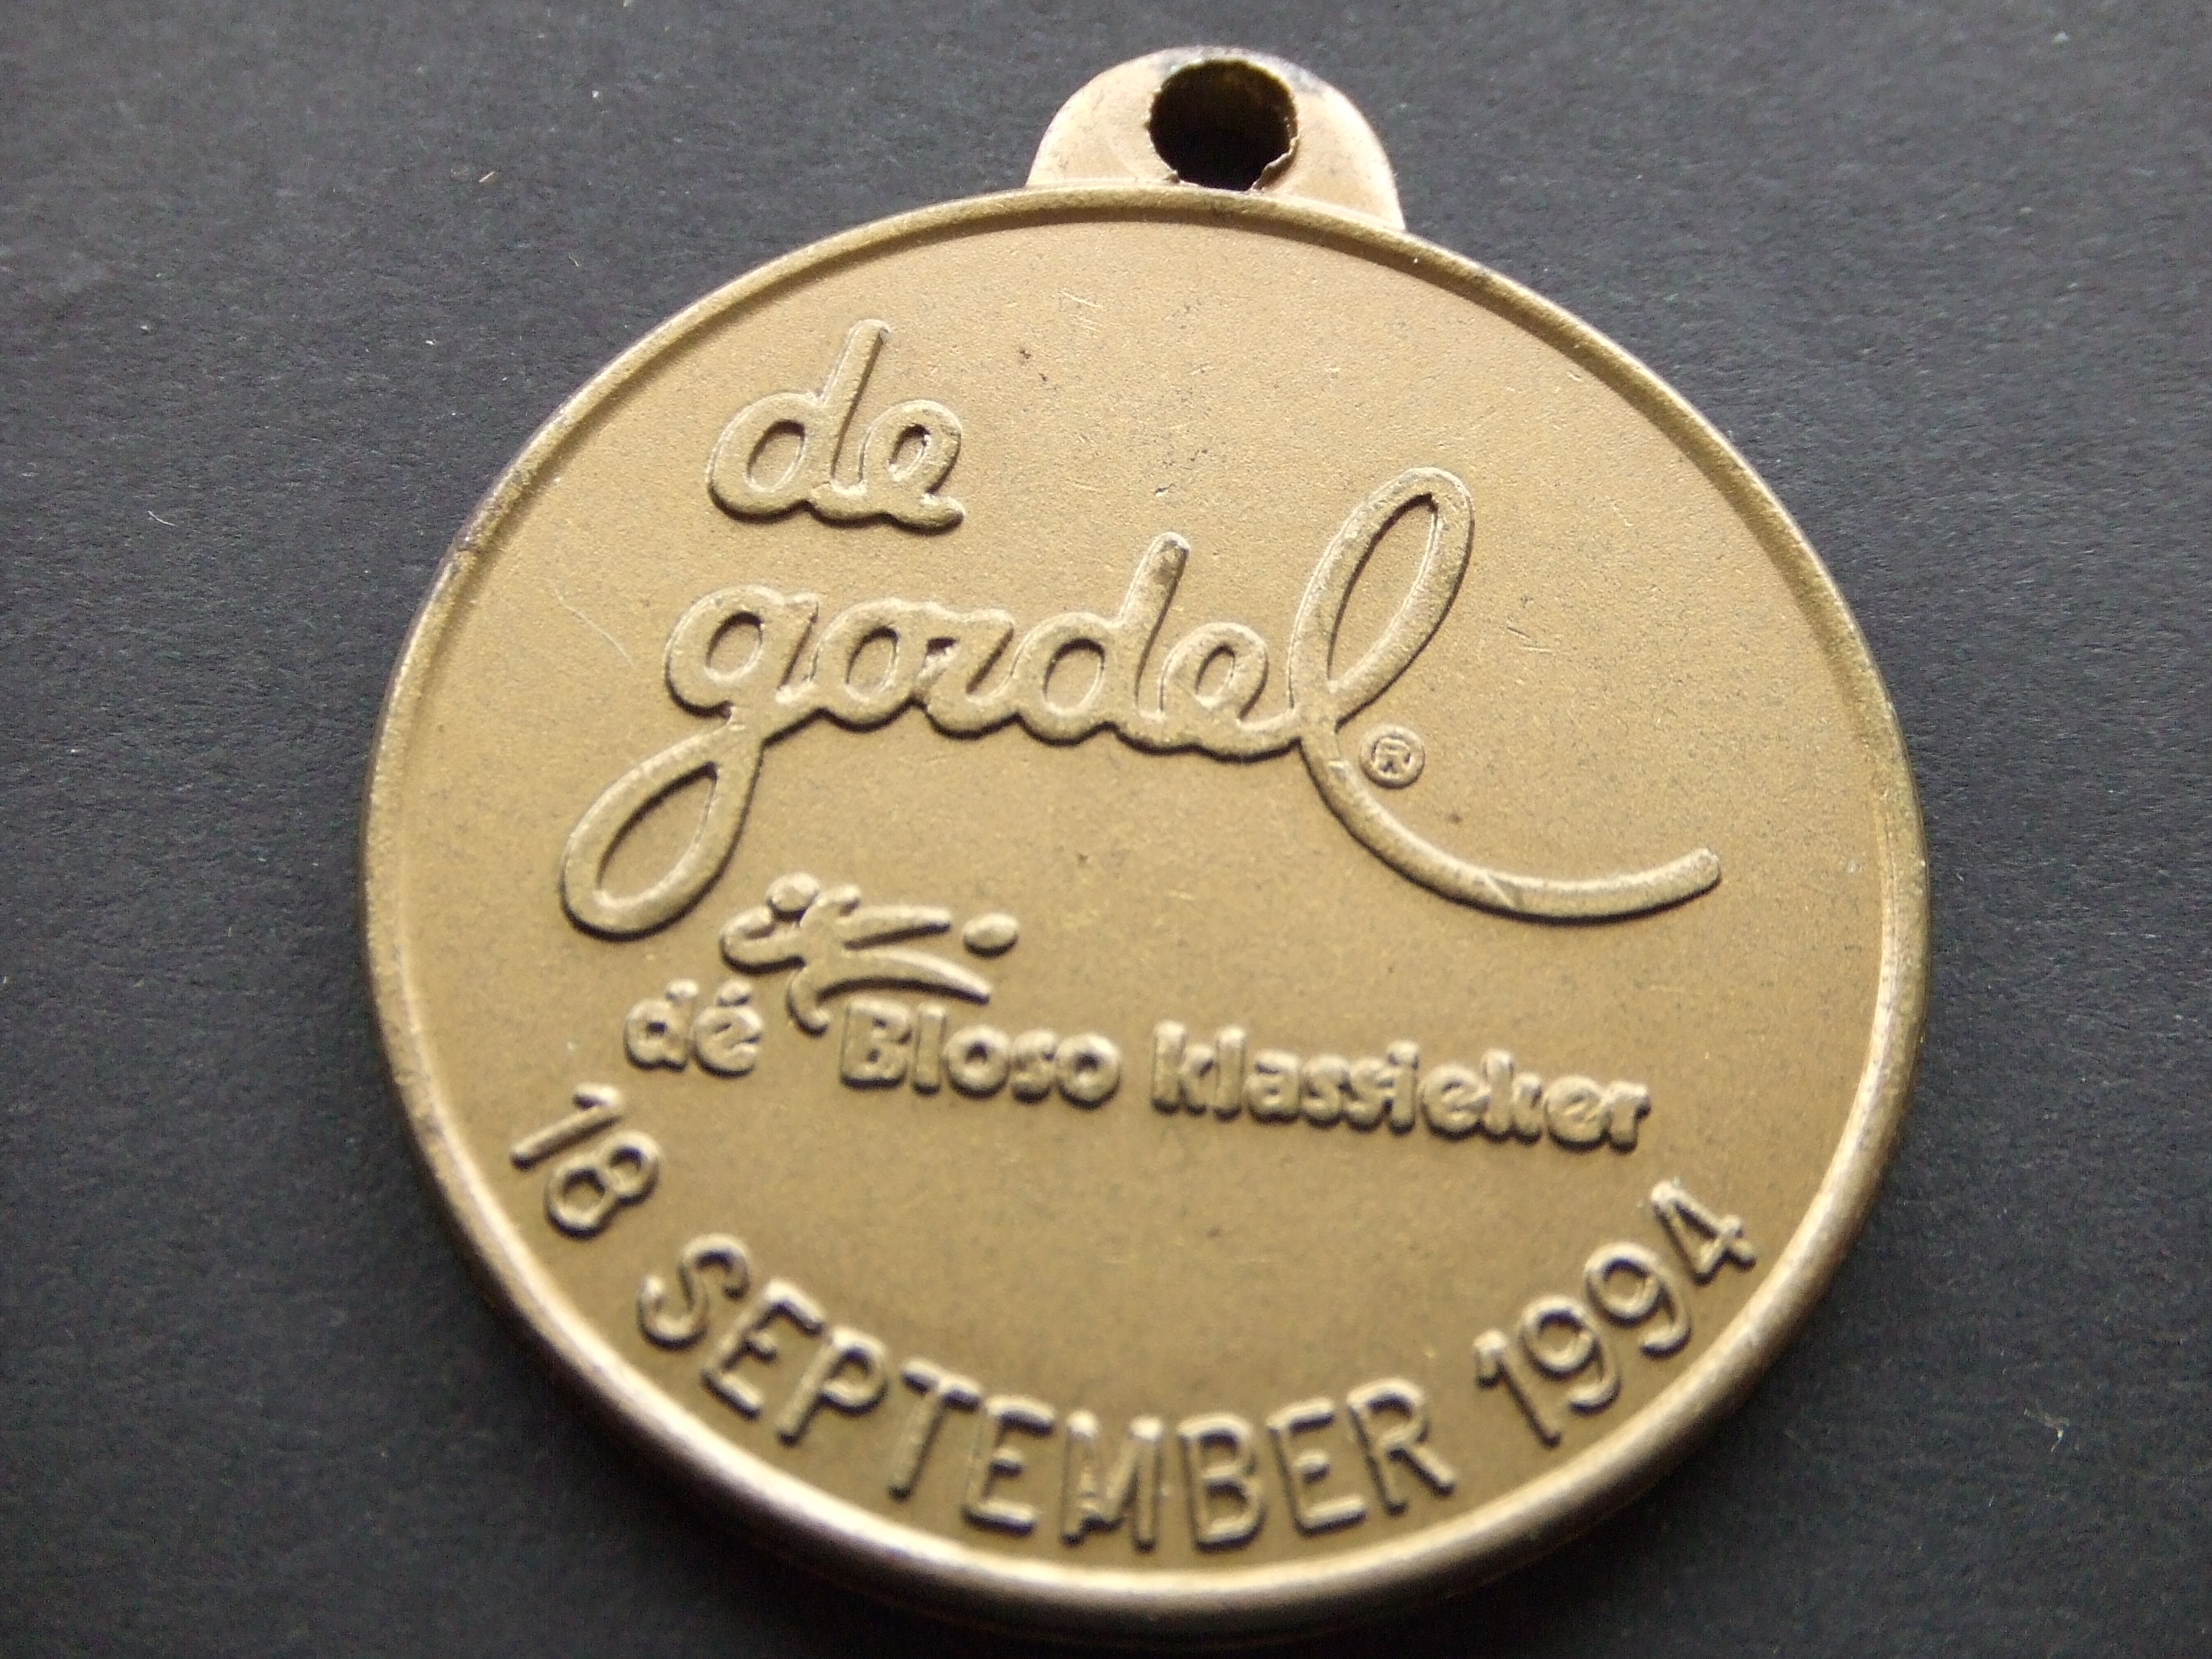 Bloso-klassieker fiets- en wandelevenement Vlaanderen 1994